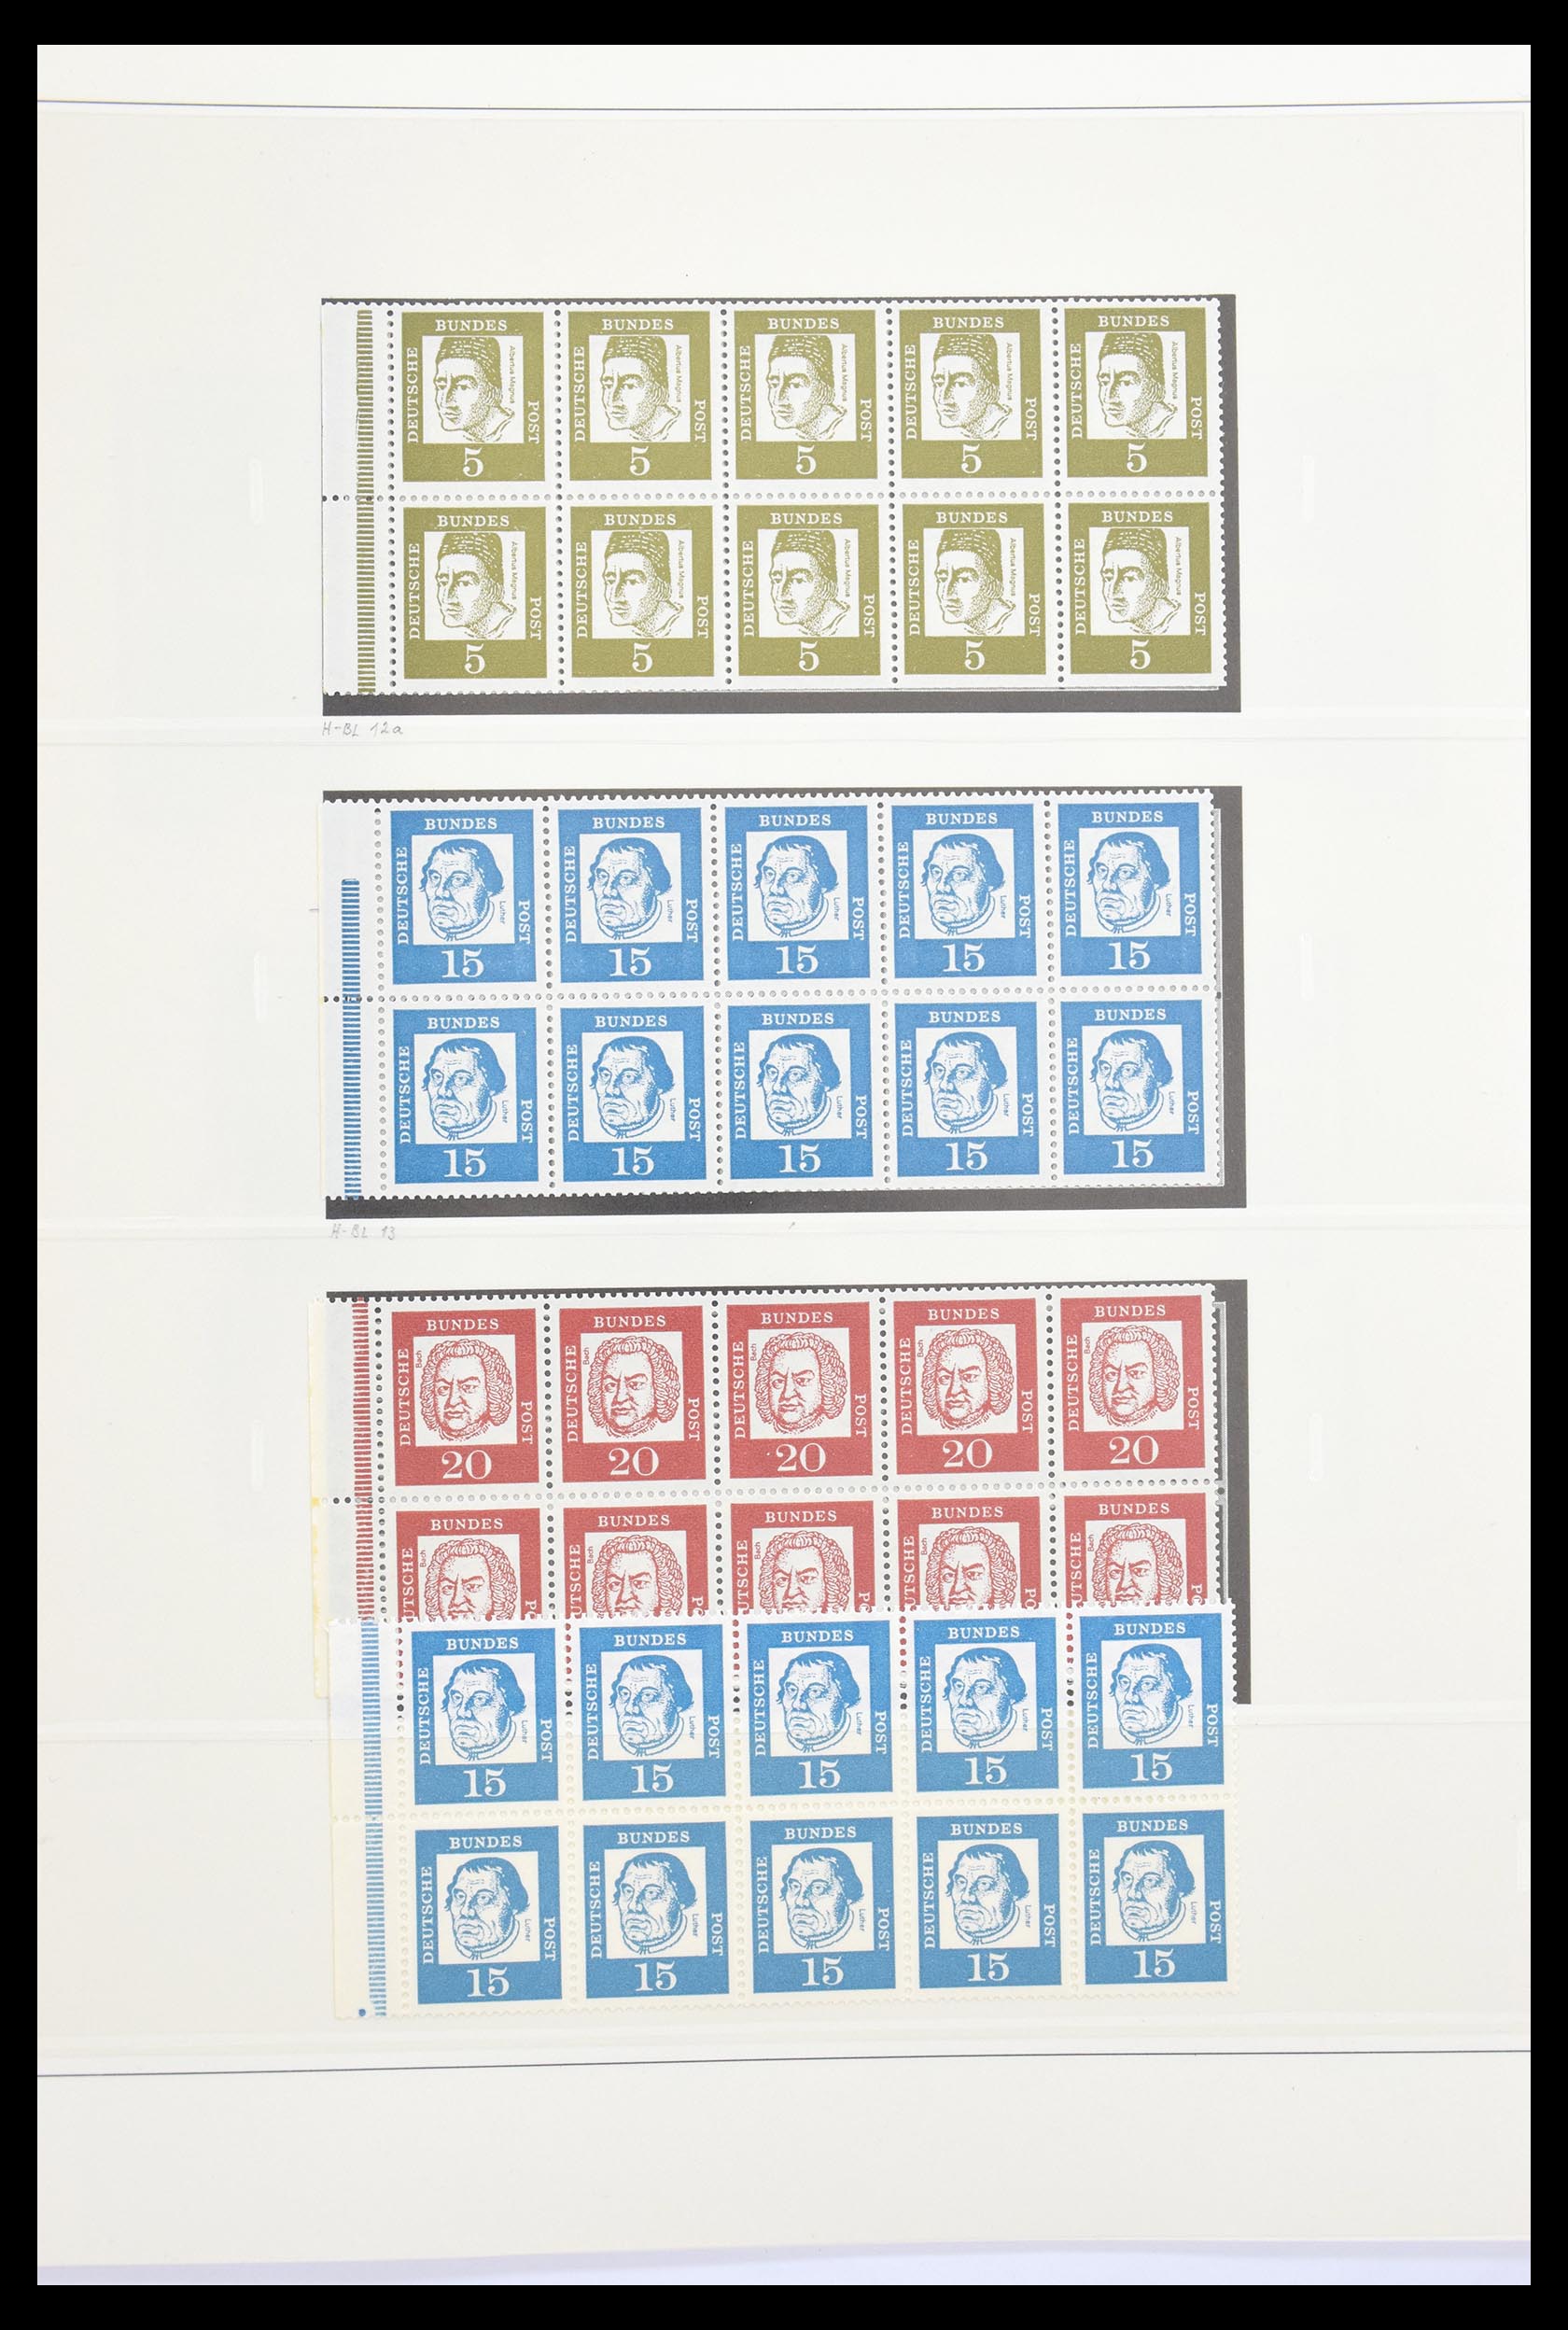 30605 019 - 30605 Bundespost combinations 1951-1974.